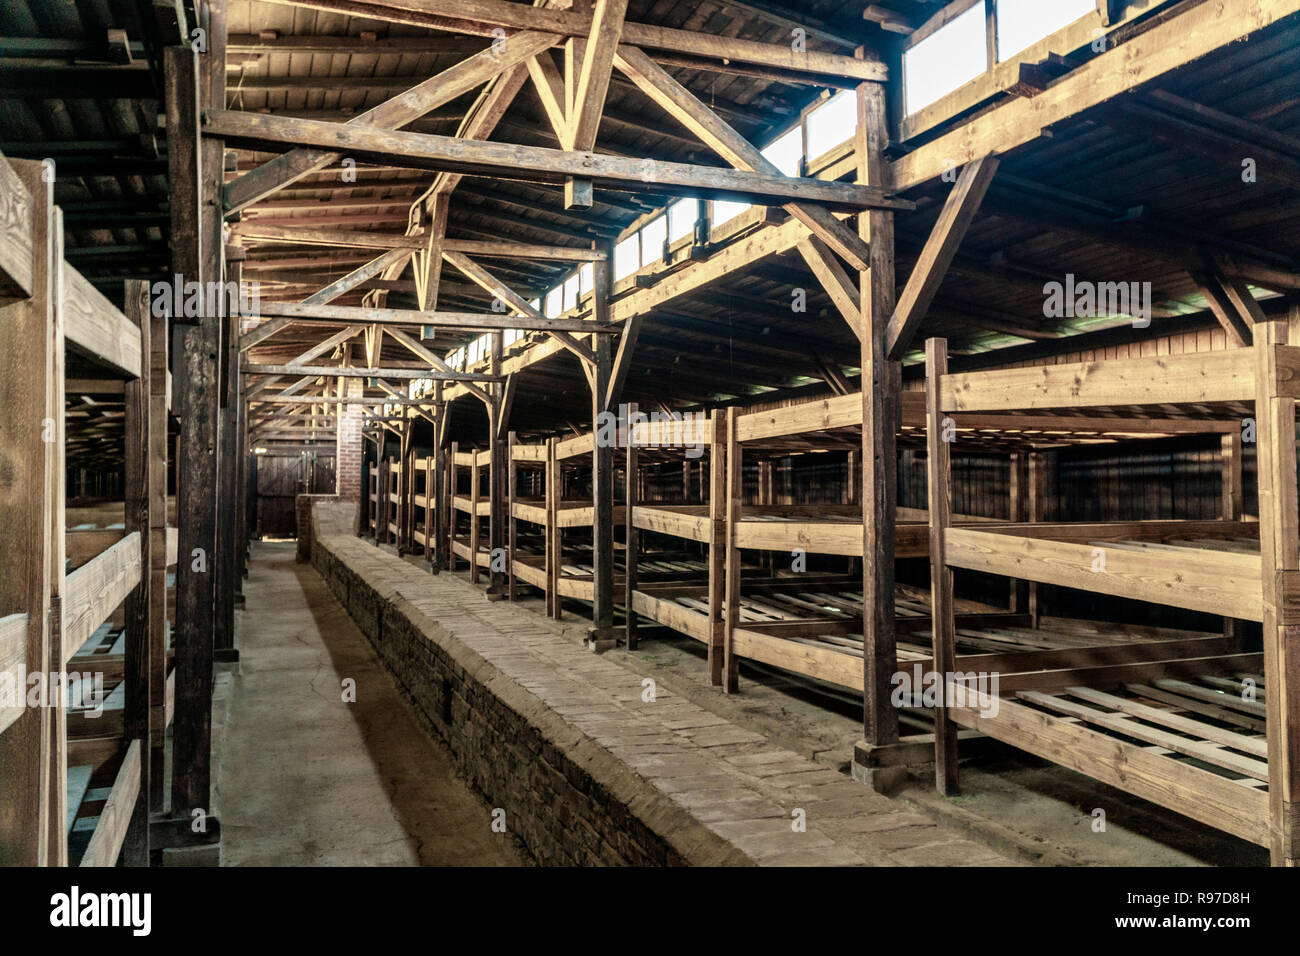 Lits superposés en bois dans un baraquement à Auschwitz - Birkenau Camp de concentration, Pologne Banque D'Images